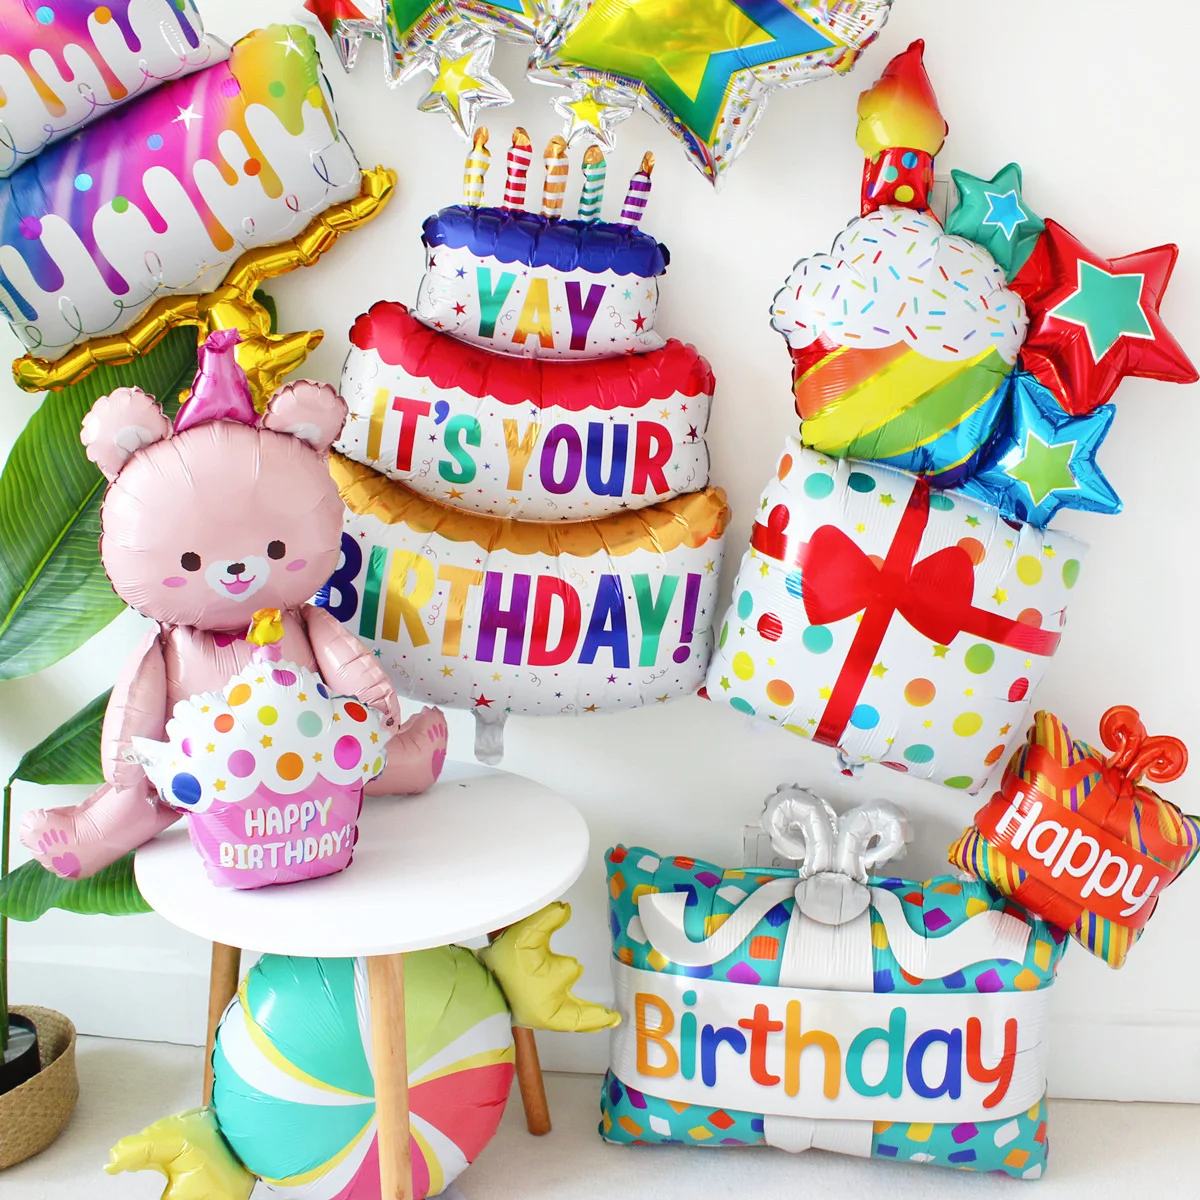 С Днем рождения, торт, Мишка, воздушные шары из фольги, украшения для вечеринки по случаю дня рождения, 40-дюймовый Кремово-белый цифровой воздушный шар, шары для душа ребенка